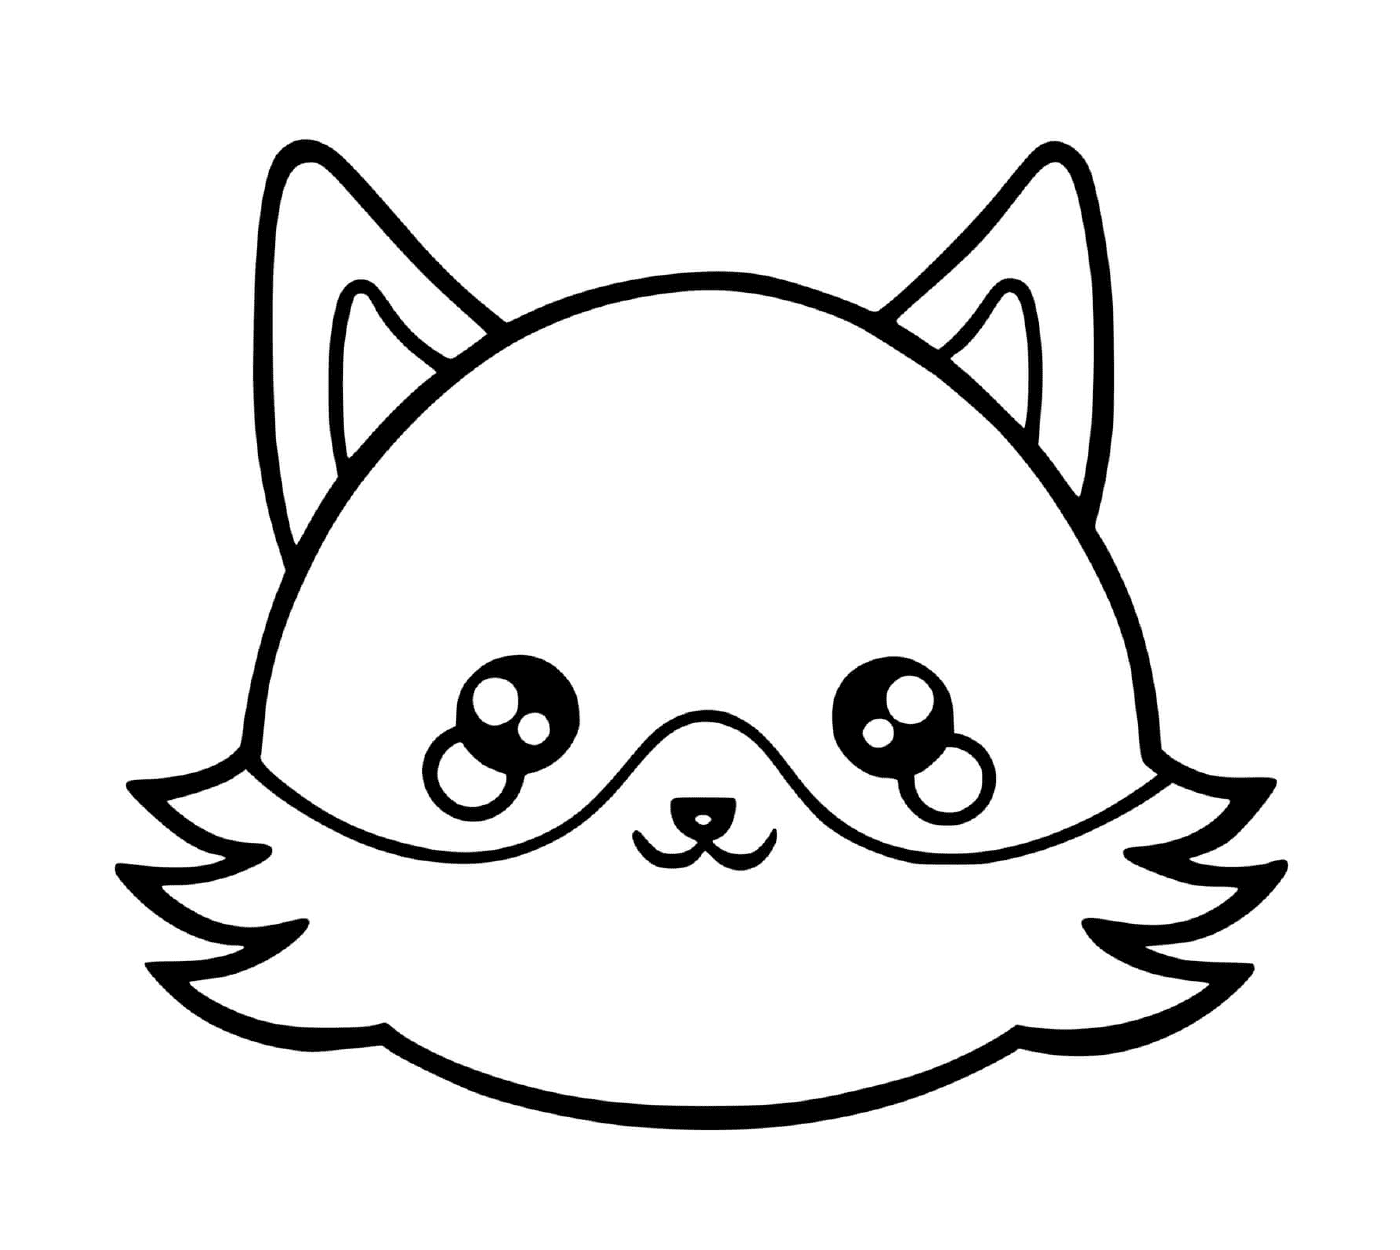  Un zorro con una cara de gato dibujada en él 